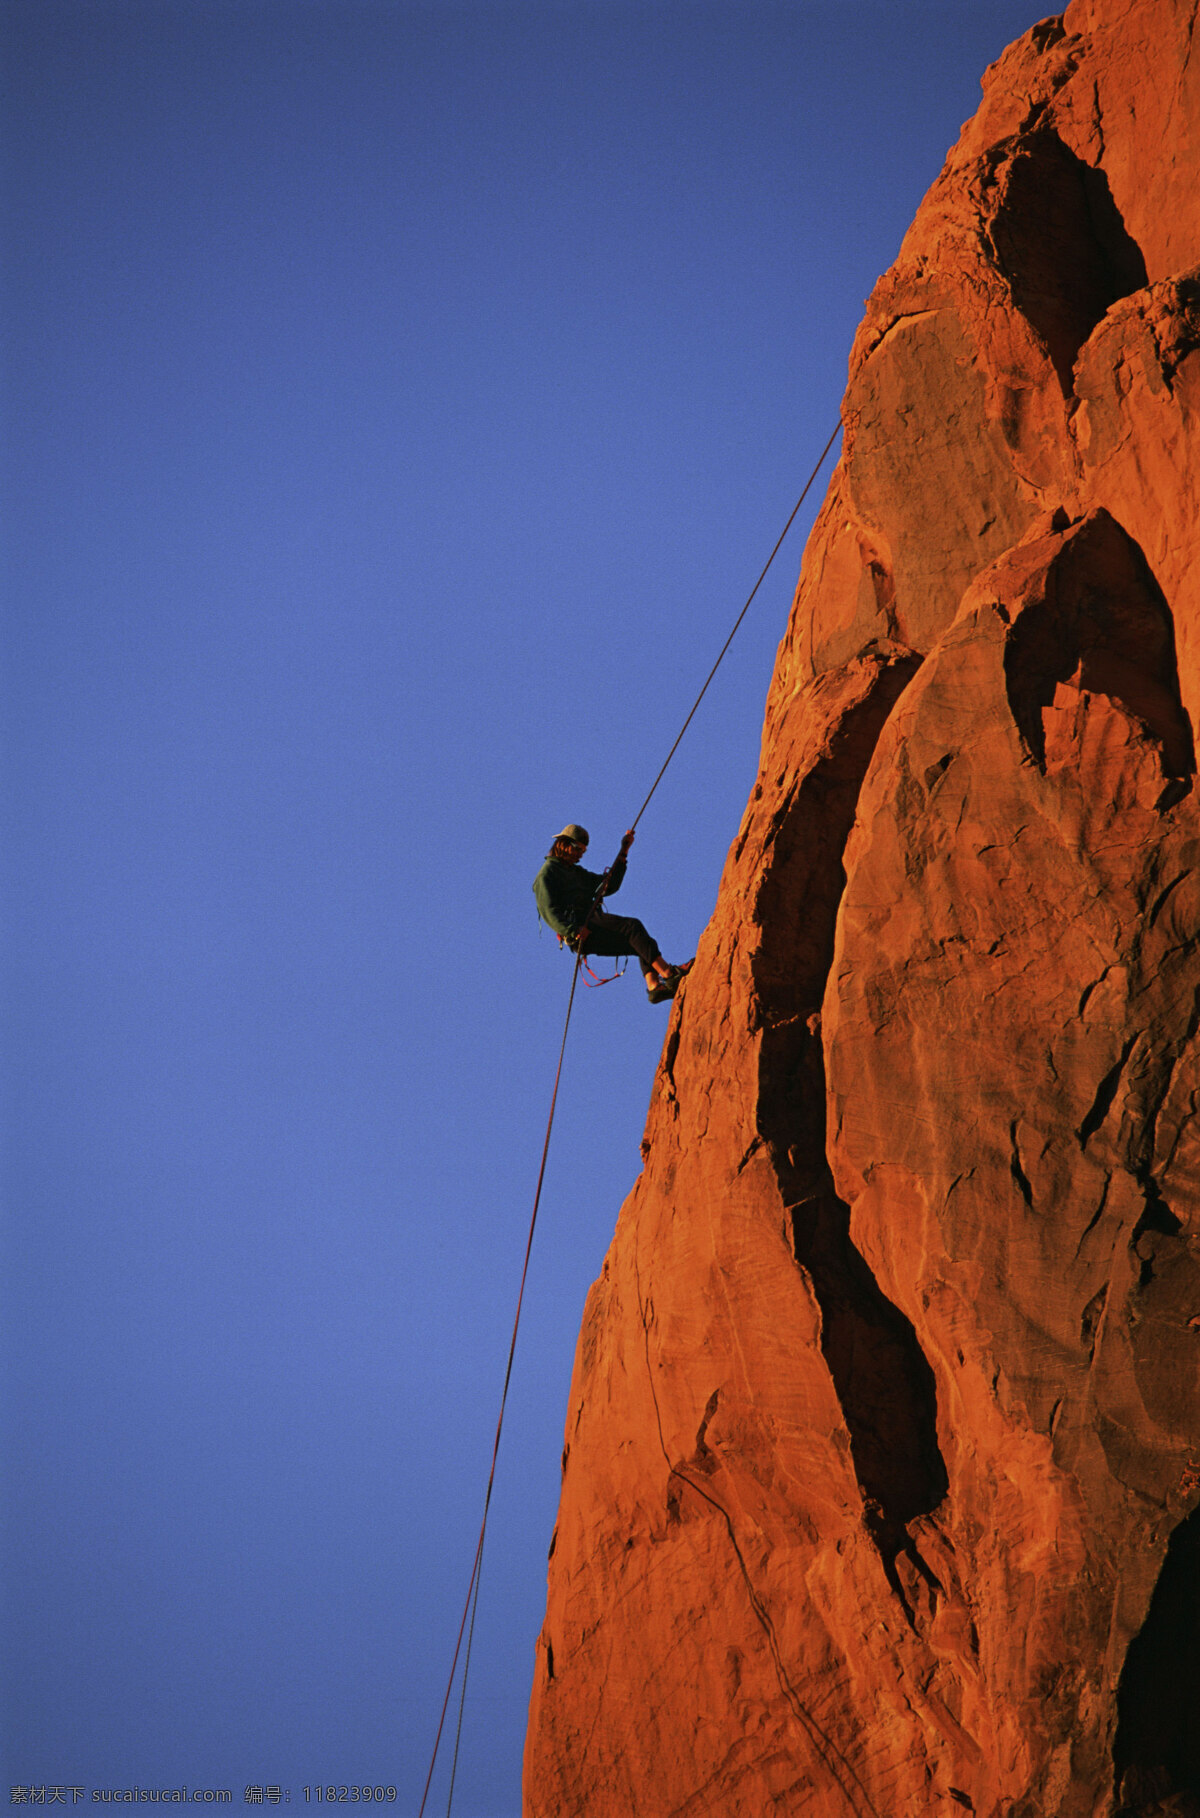 极限运动 挑战极限 攀岩 山峰 攀登 日常生活 人物图库